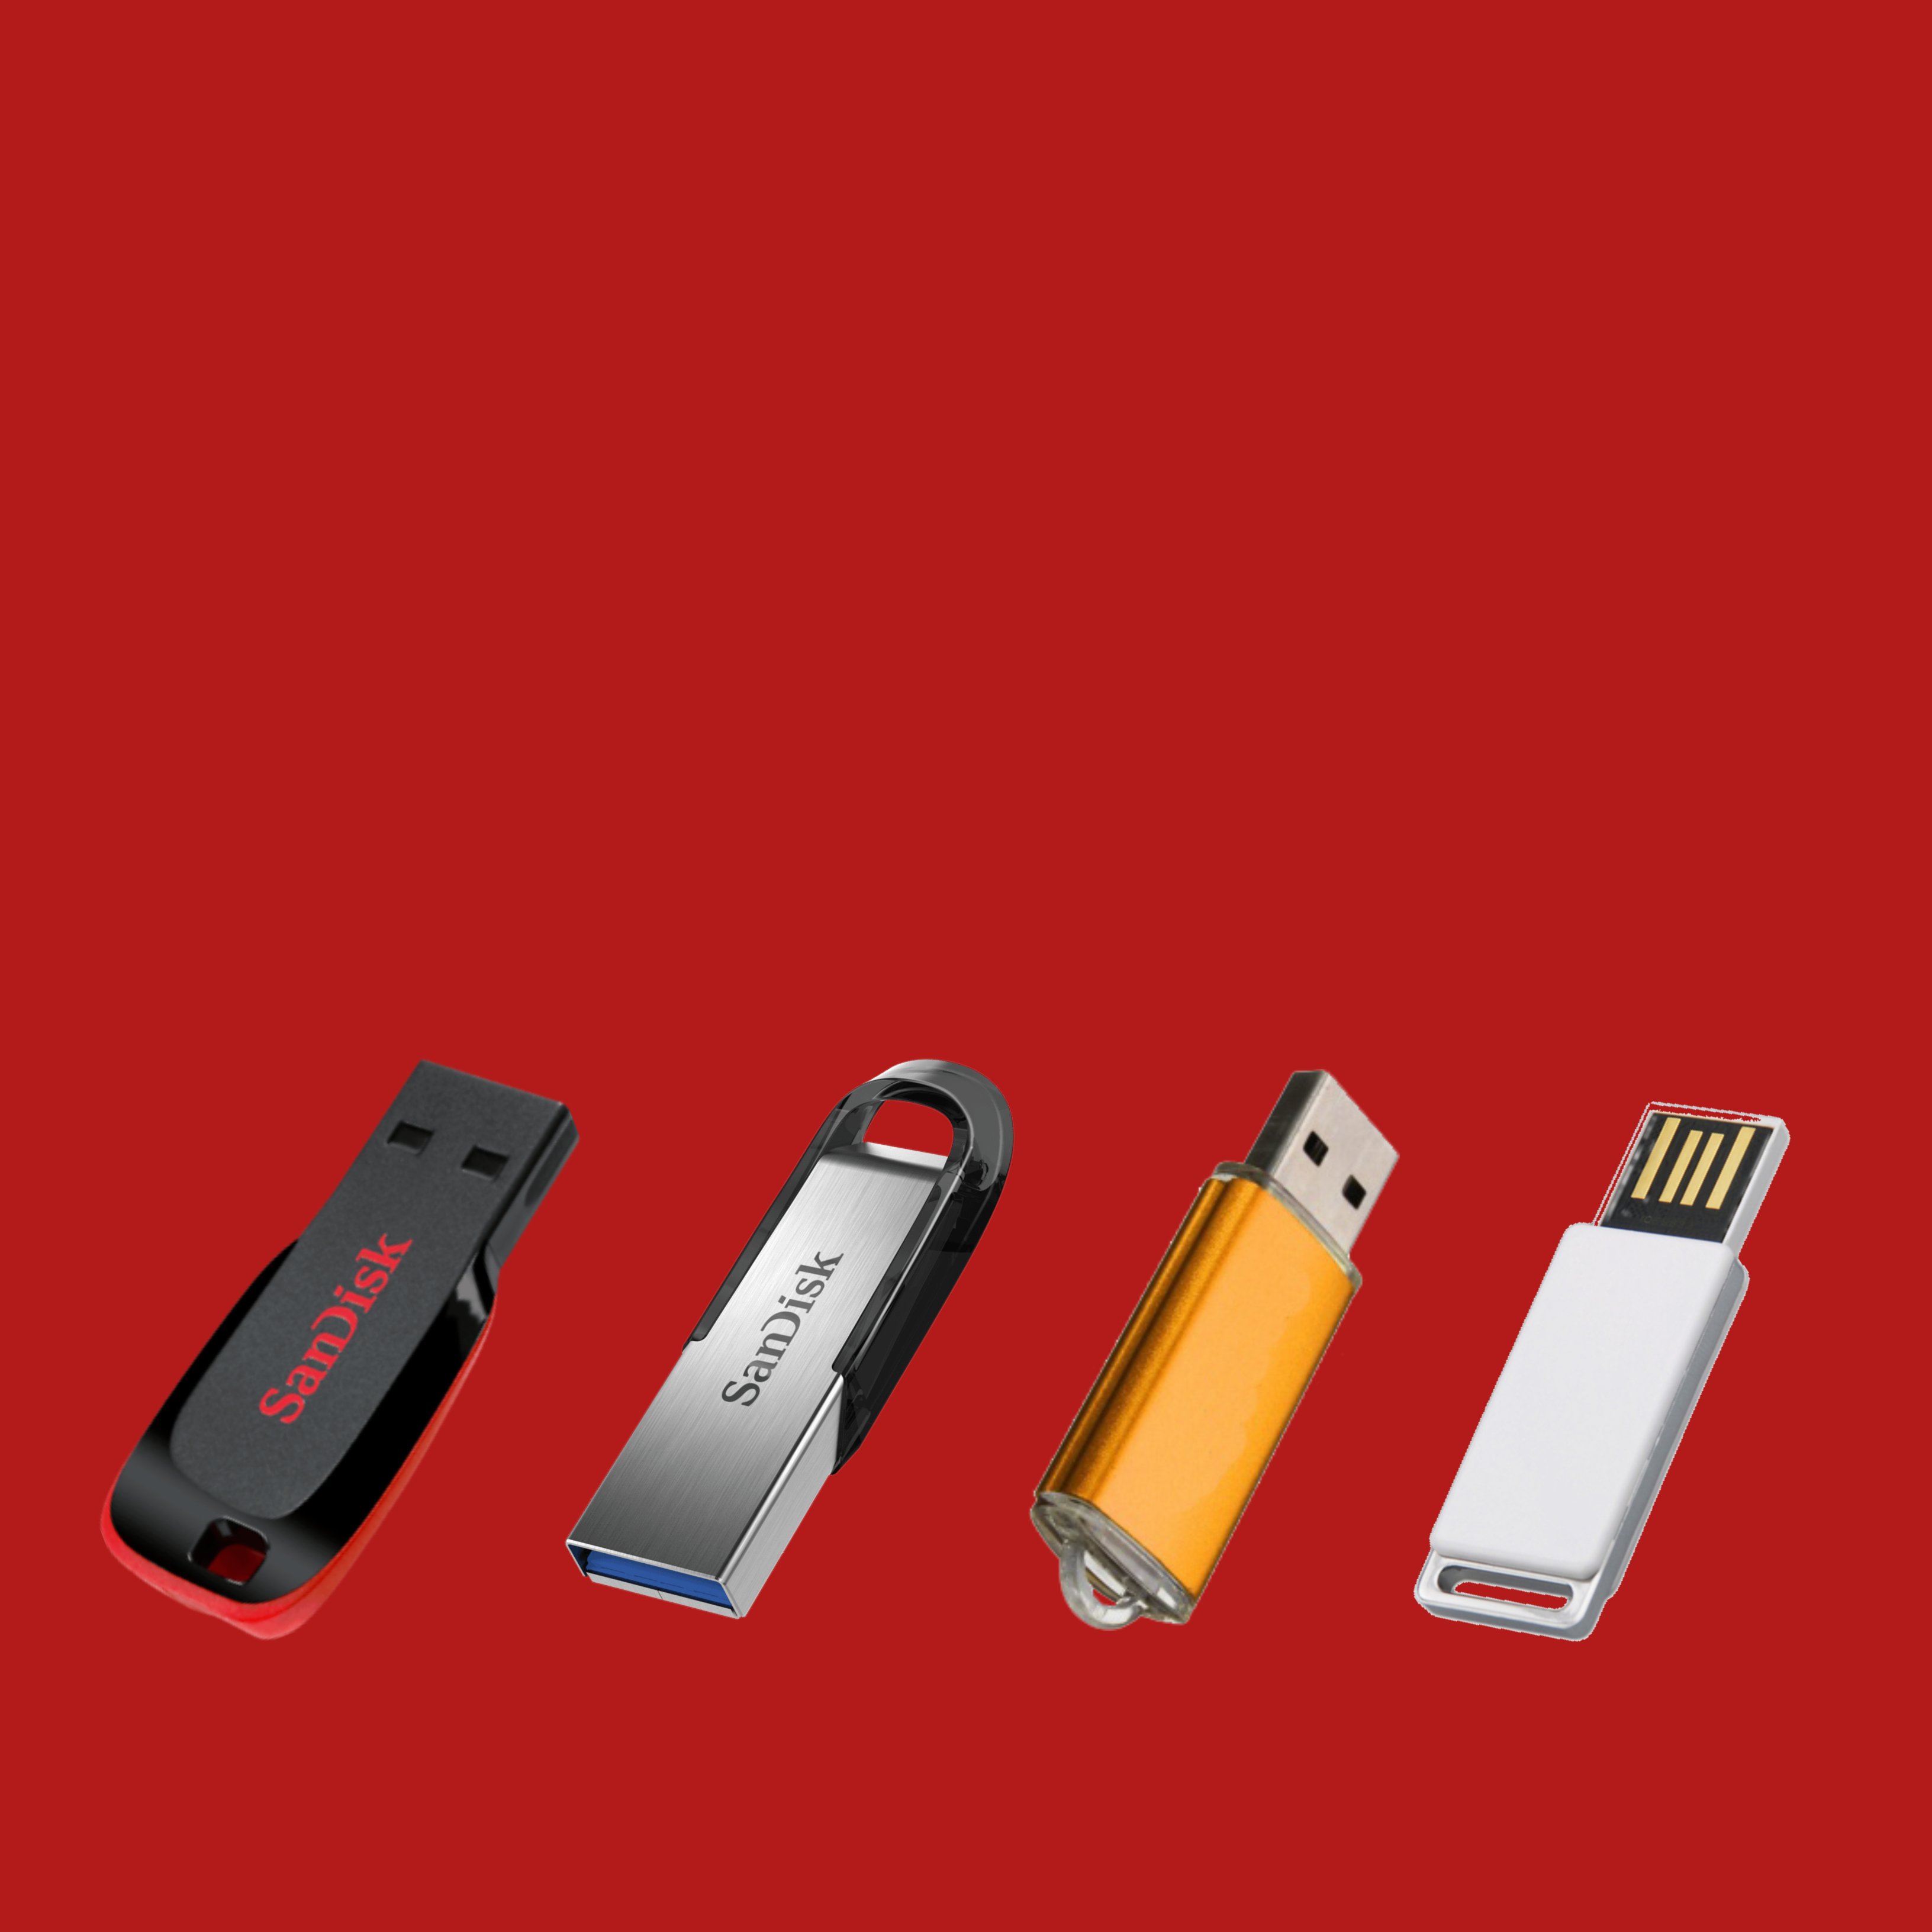 Quins aspectes has de tenir en compte a l'hora de comprar una memòria USB